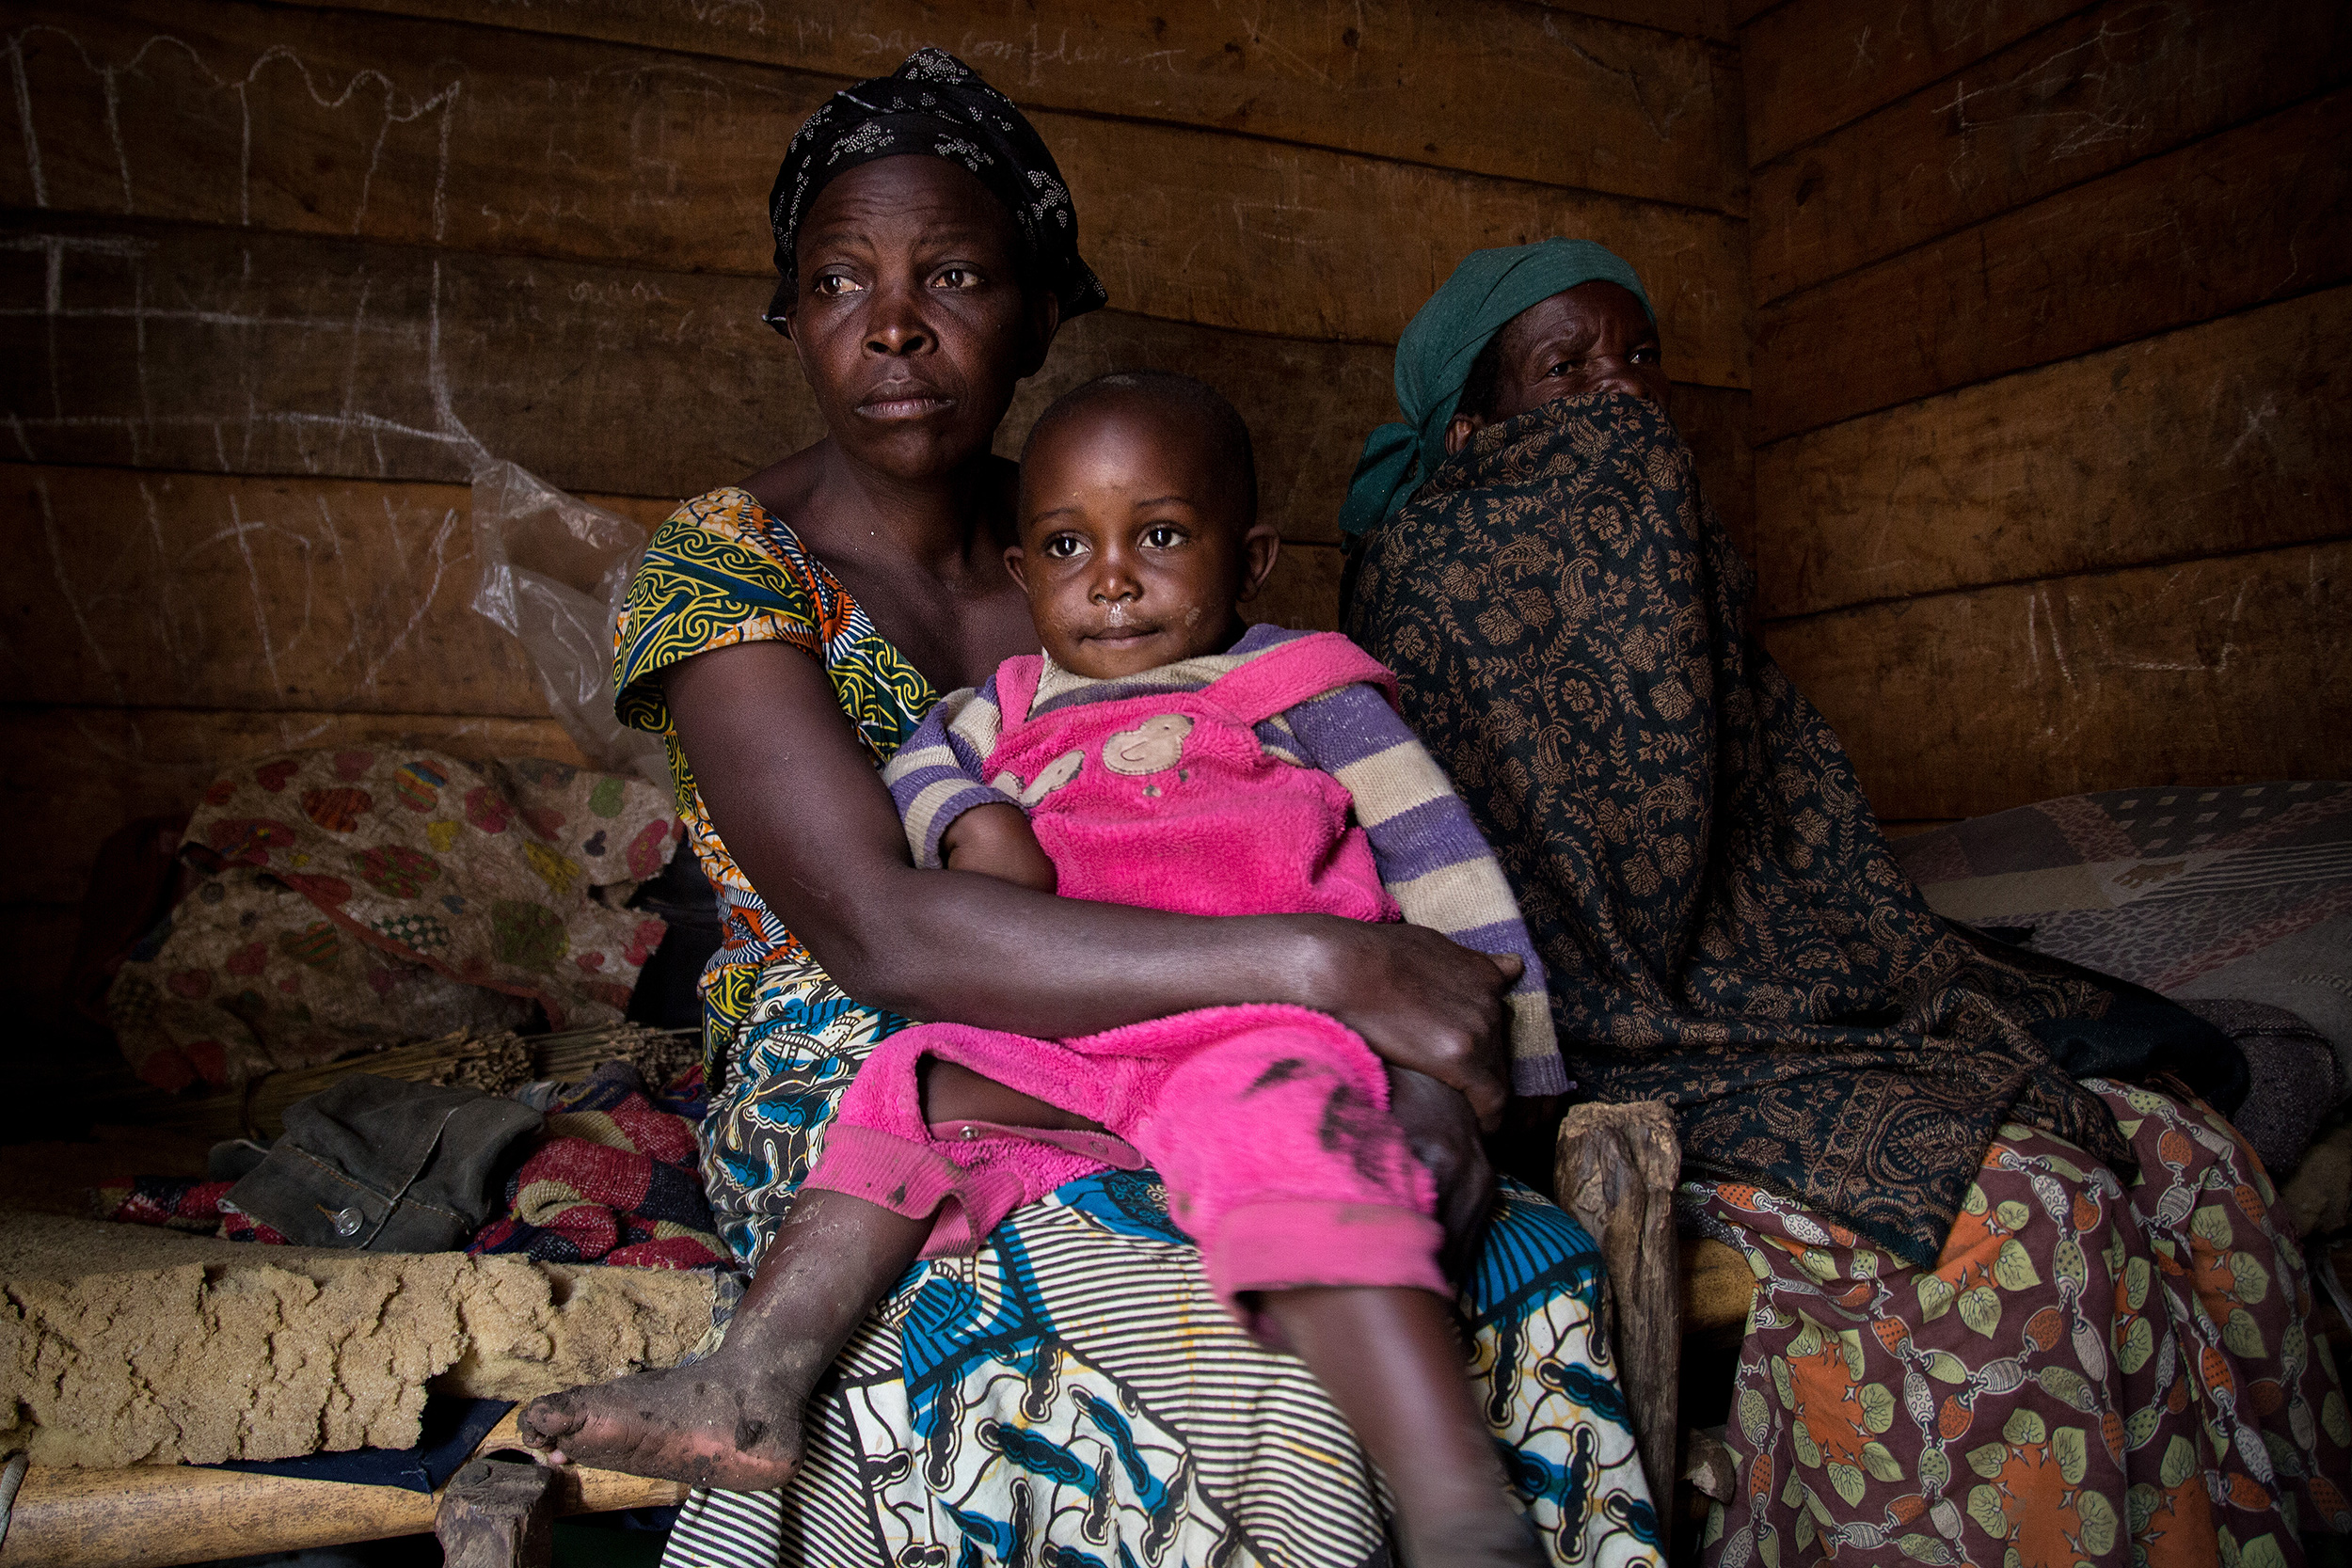 Loabauma con su hija pequea en brazos, junto a una anciana con el rostro tapado, posan sentadas sobre el jergn de su vivienda.